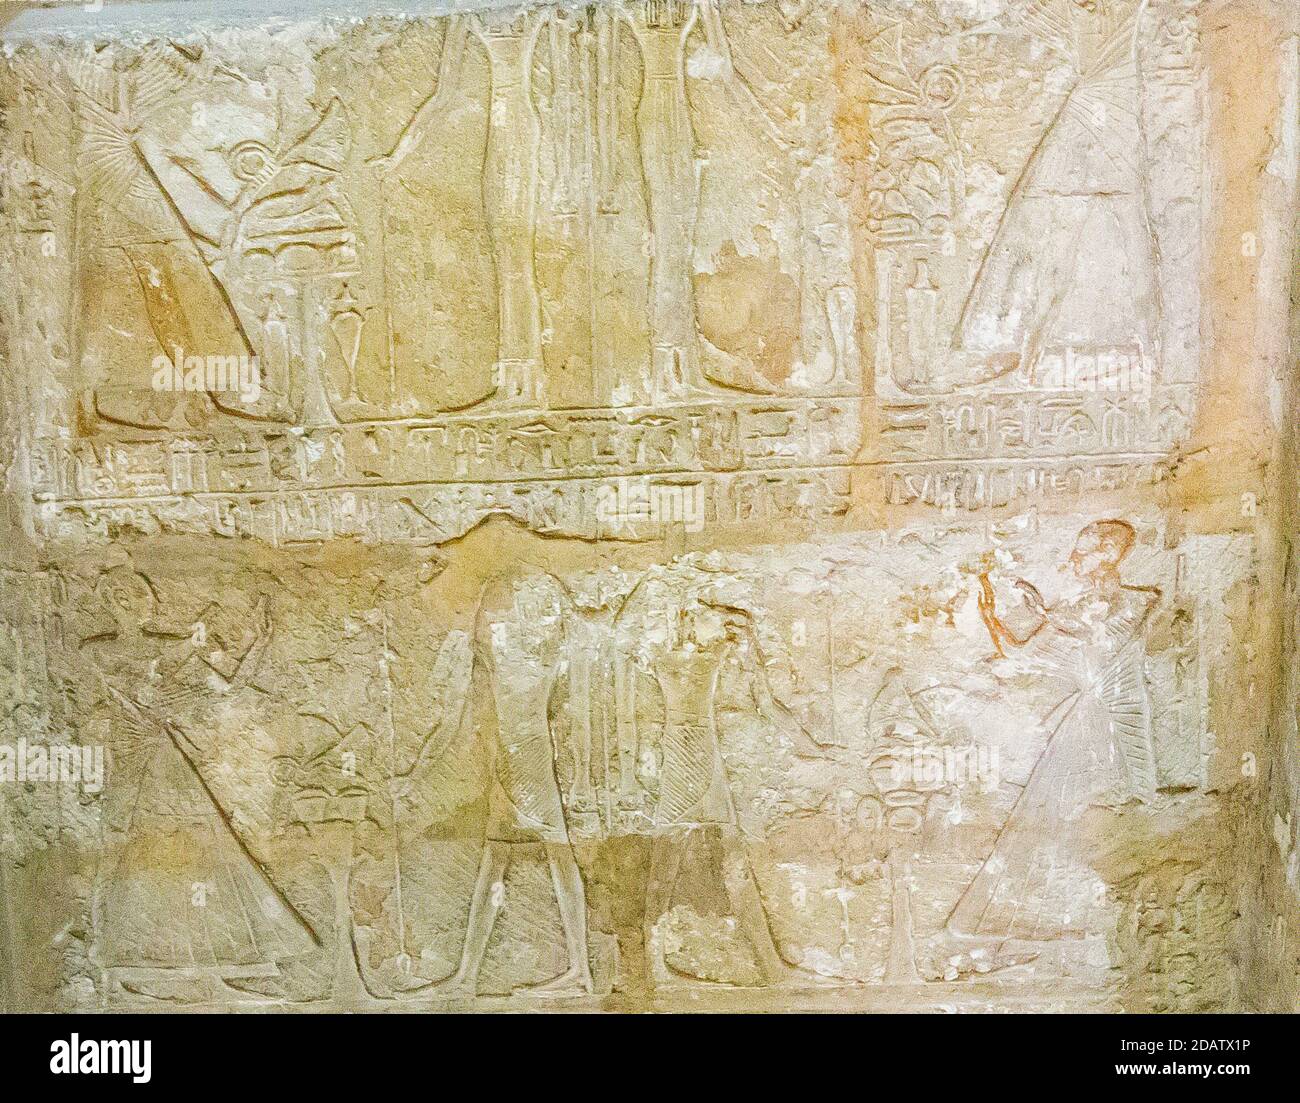 Ägypten, Kairo, Ägyptisches Museum, Teil des Grabes von Mes (oder Mose), aus Saqqara. Dieses Grab ist sehr berühmt für seinen "Rechtstext". Stockfoto